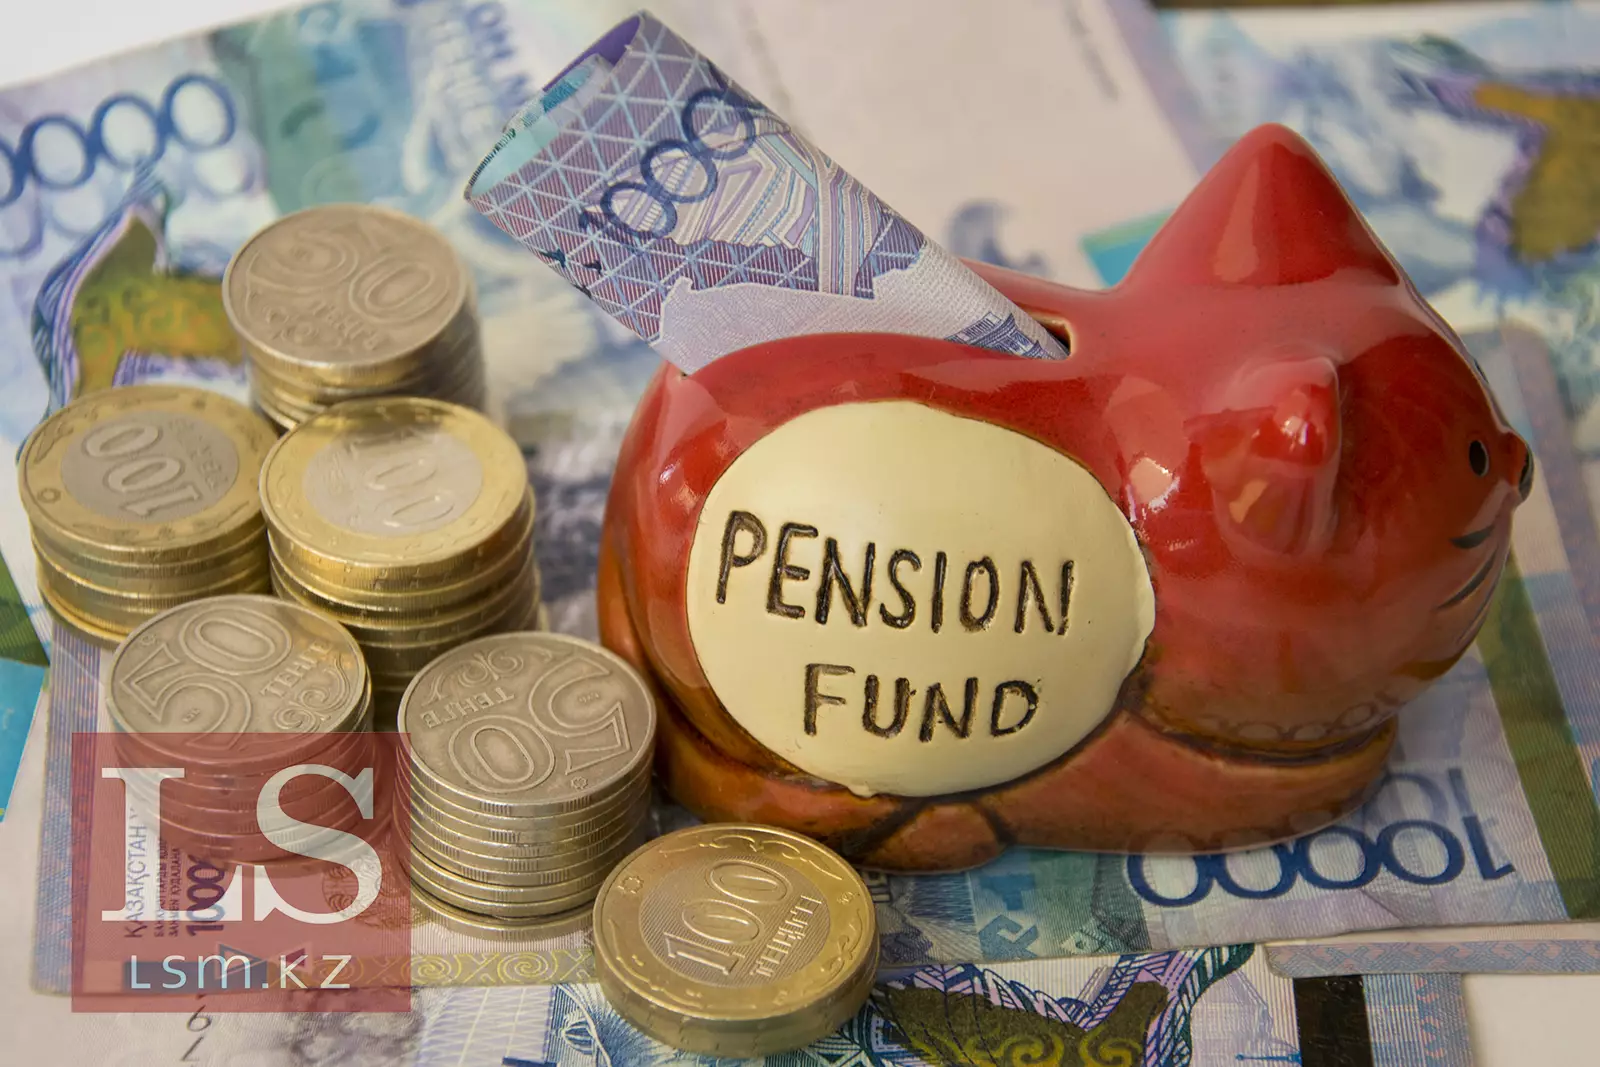 Правила использования пенсионных выплат хотят изменить в Казахстане